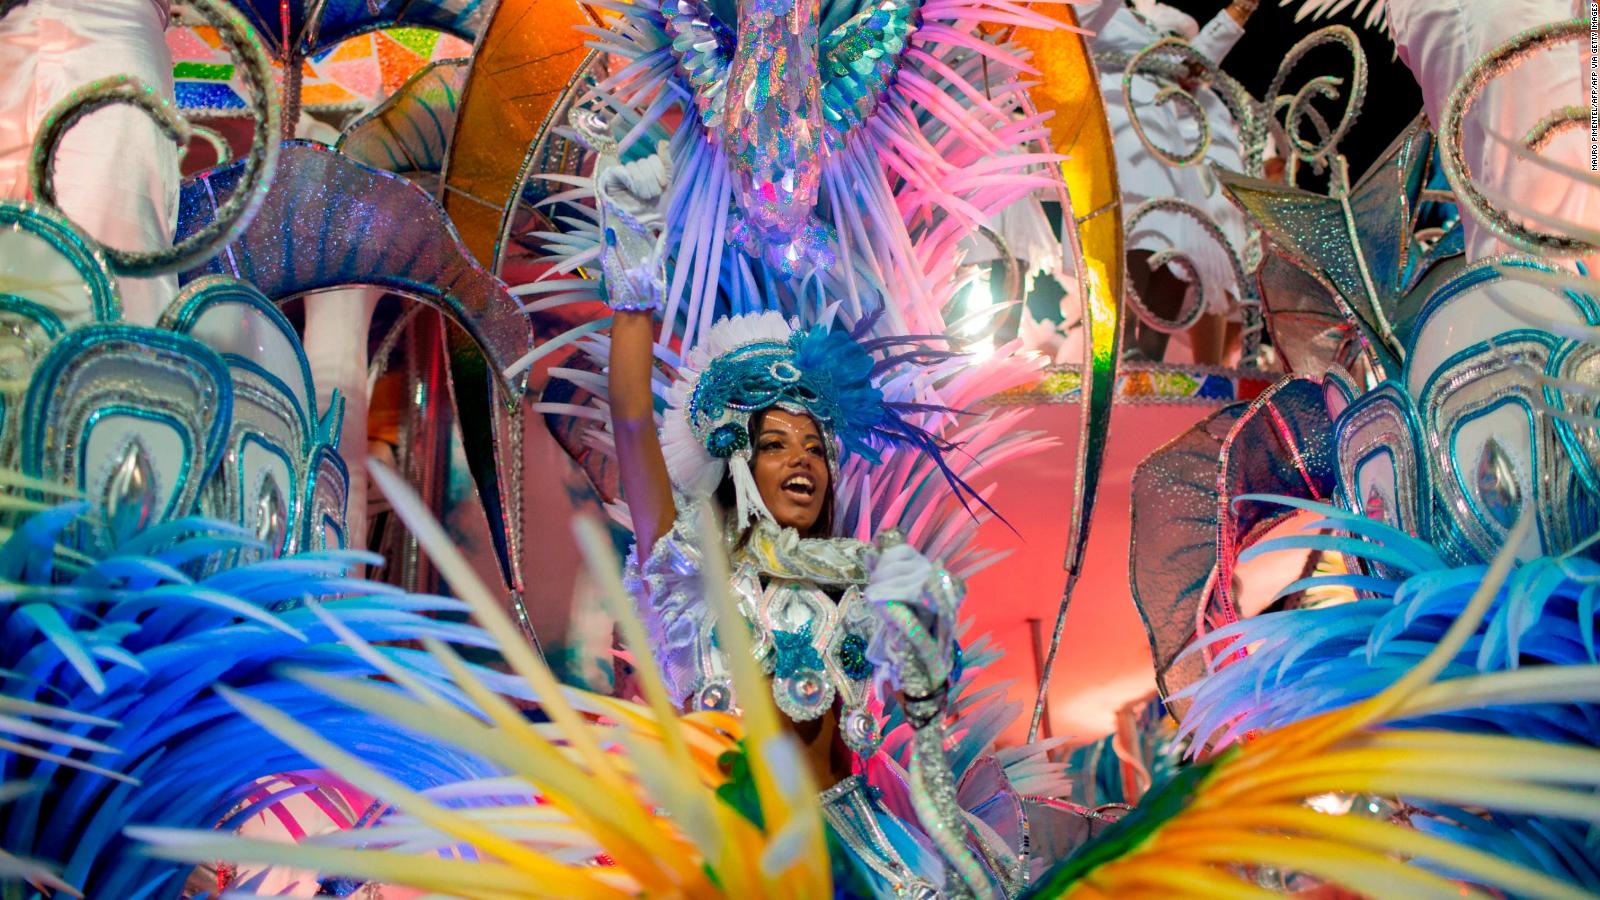 Mayor of Rio de Janeiro announces Cancellation of July Carnival Parade